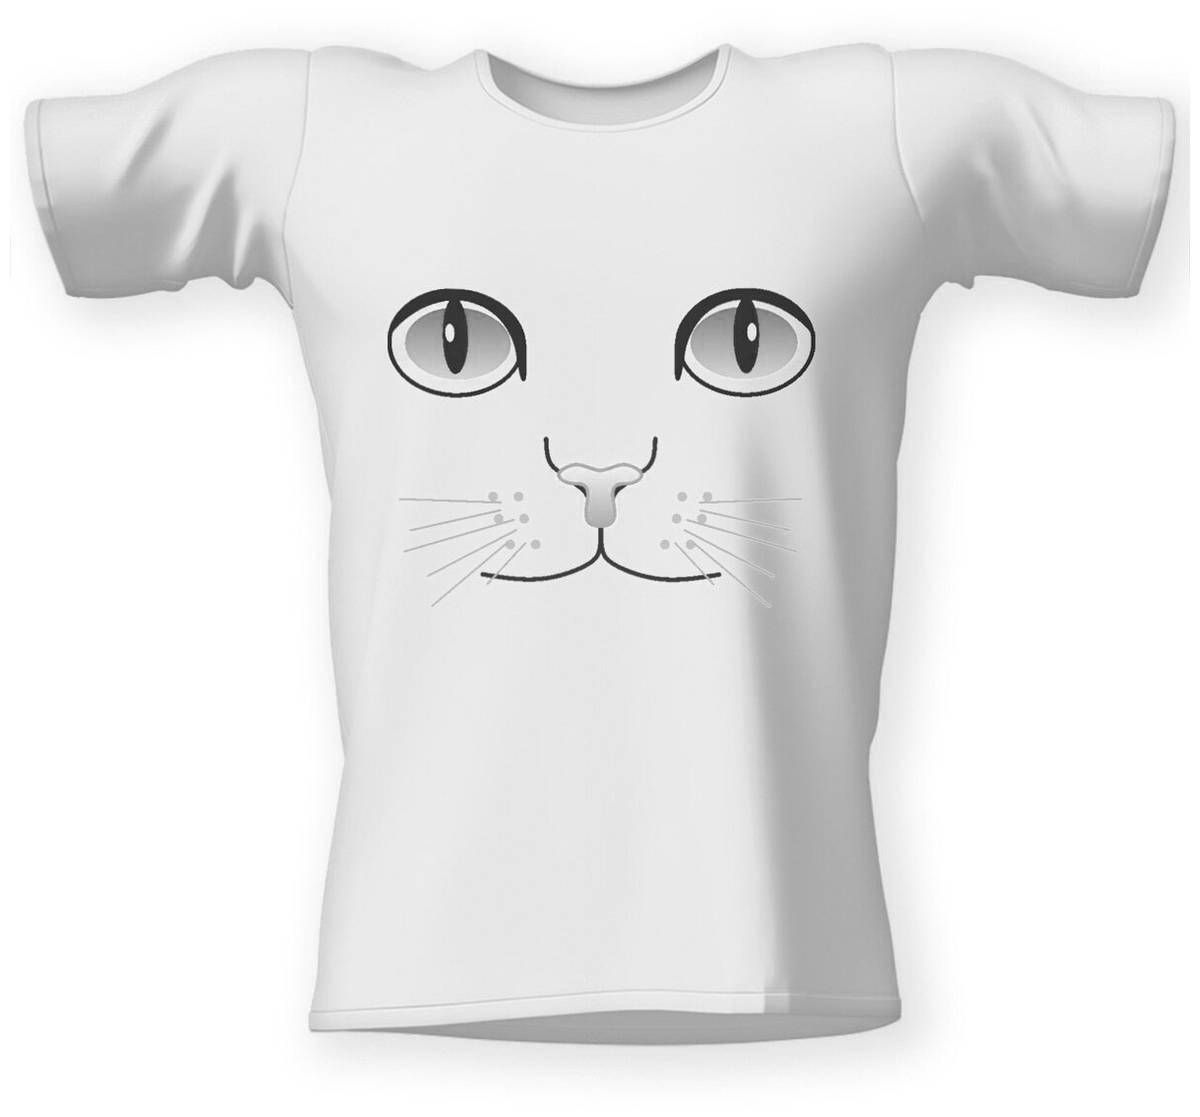 Раскраска футболка с игривым котенком